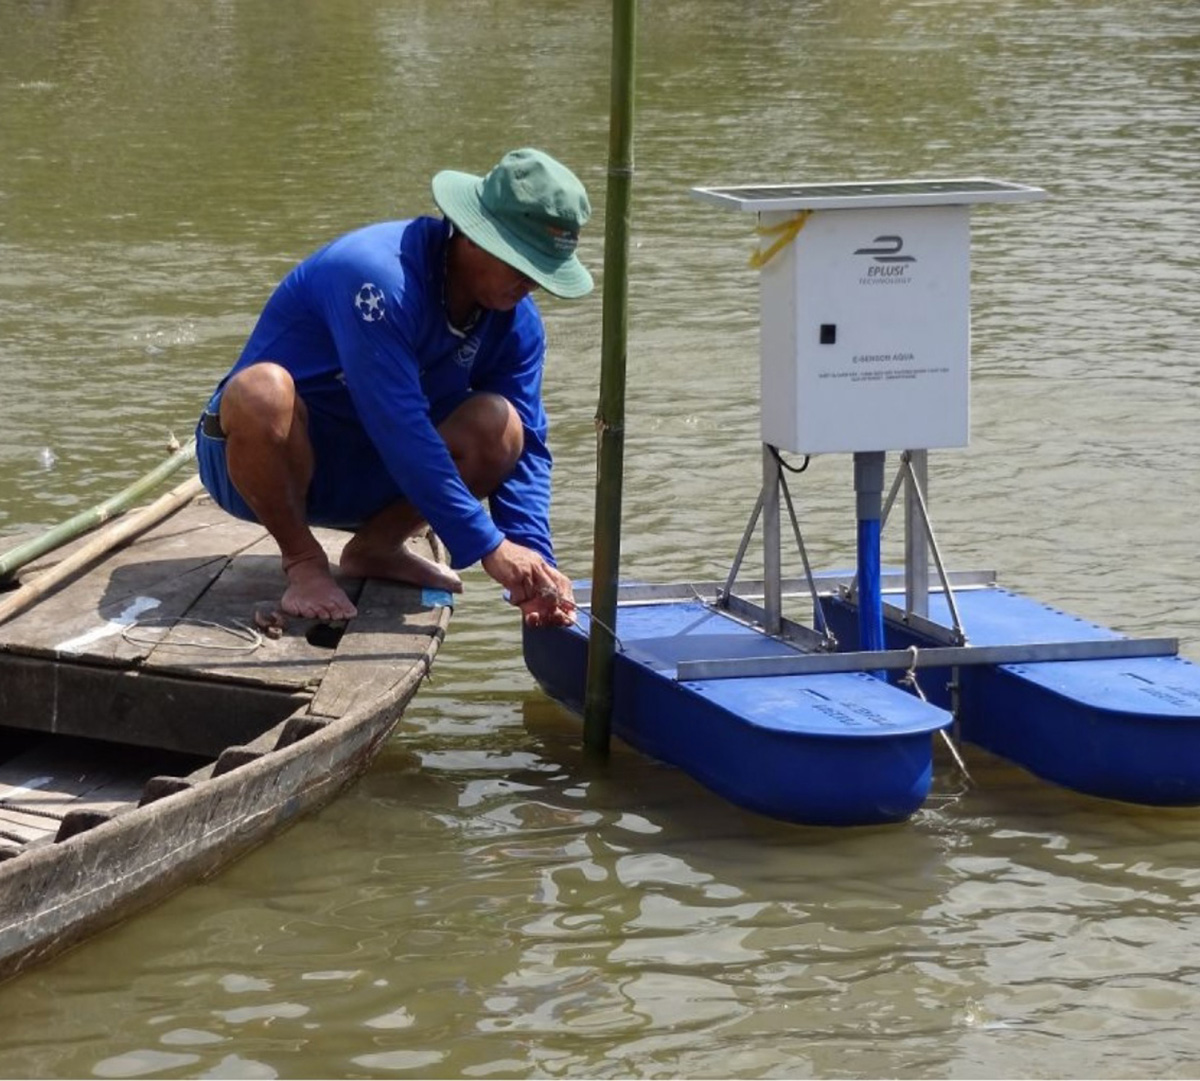 Đại học Cần Thơ và các chính quyền địa phương đang giám sát chất lượng nước để giảm thiểu ô nhiễm giúp sản xuất thủy sản bền vững ở đồng bằng sông Cửu Long với sự hỗ trợ đào tạo và tư vấn từ Nhóm Hợp tác & Thương mại Khoa học của chương trình Aus4Innovation